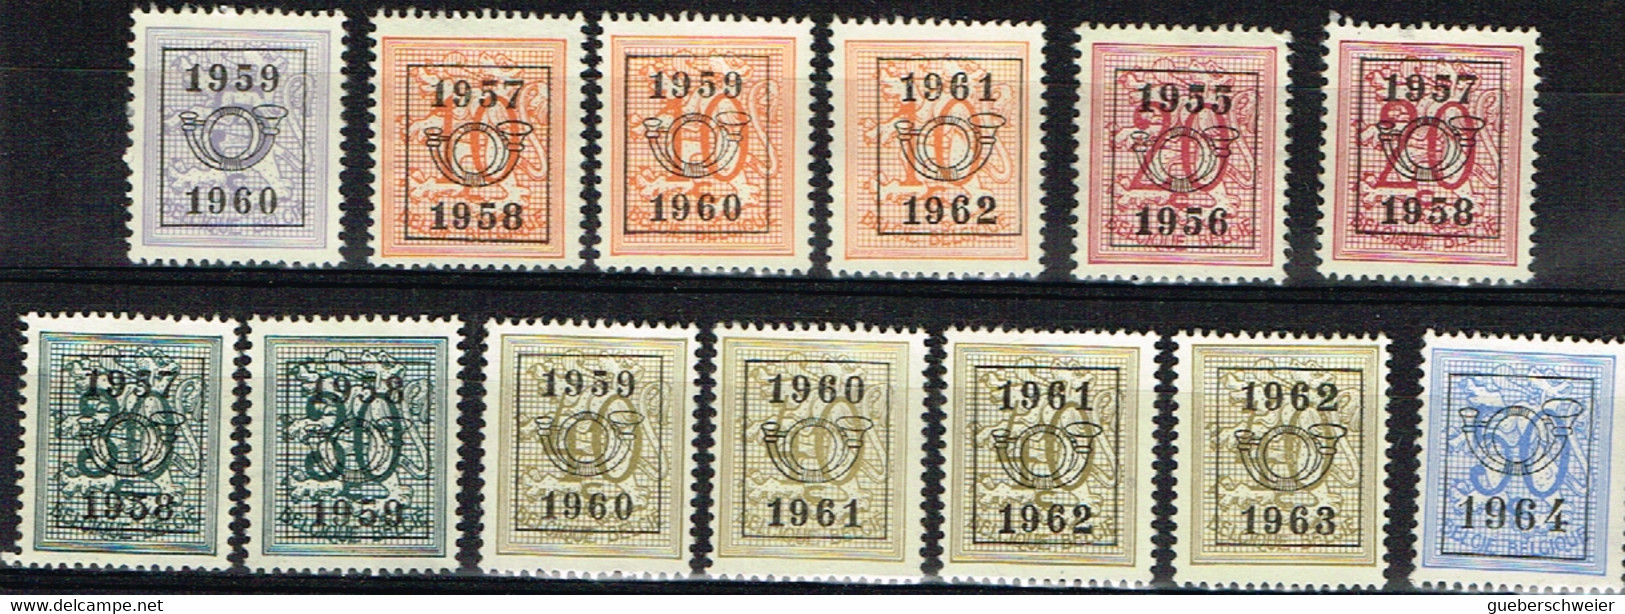 B 83 - BELGIQUE Lot De 13 Timbres Préoblitérés Différents - Typos 1967-85 (Lion Et Banderole)